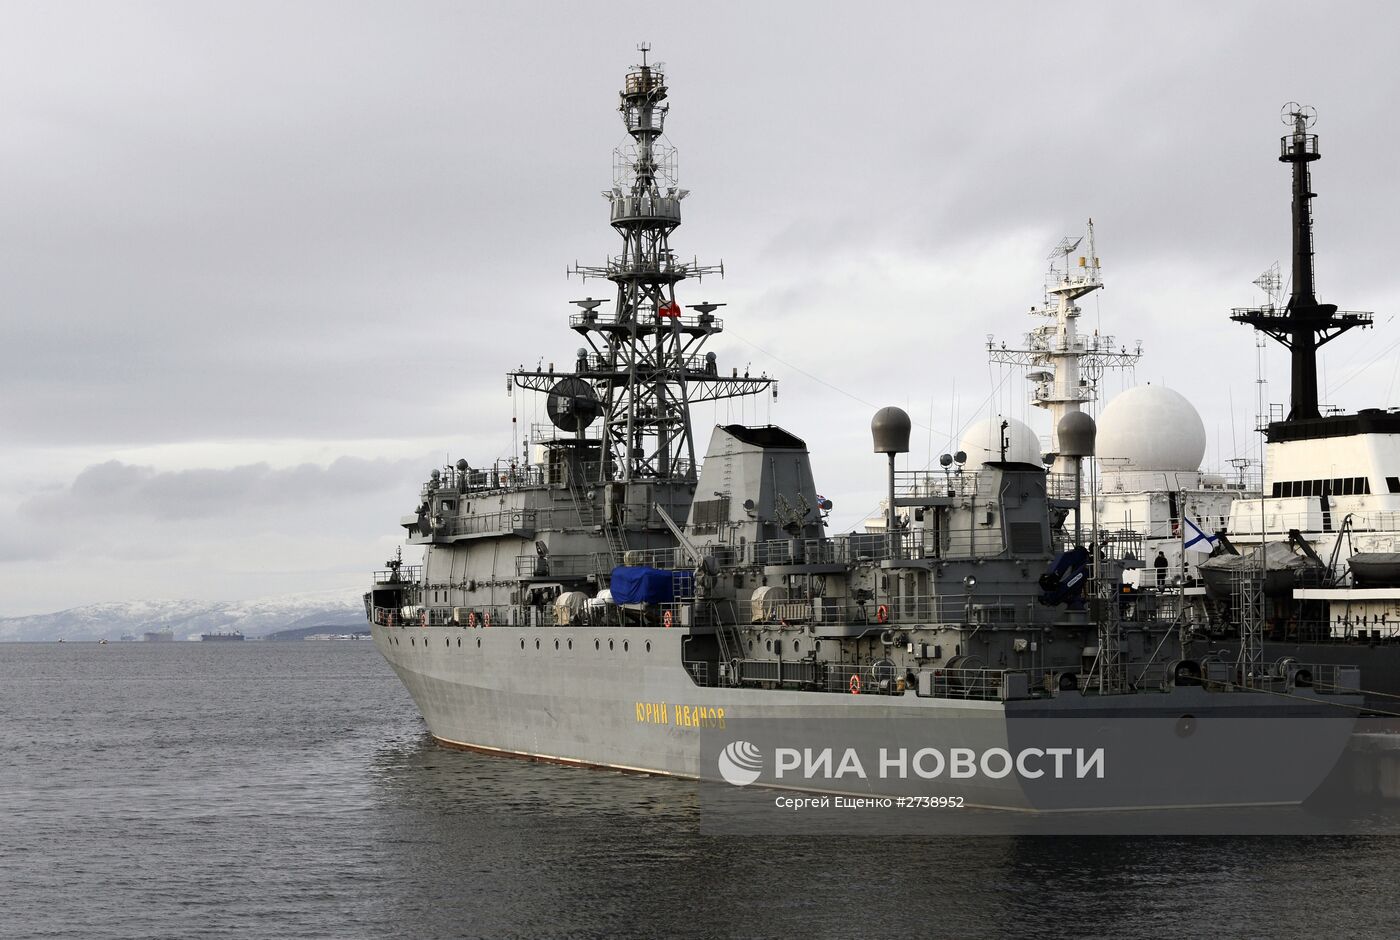 Прибытие нового специального судна связи "Юрий Иванов" в Североморск